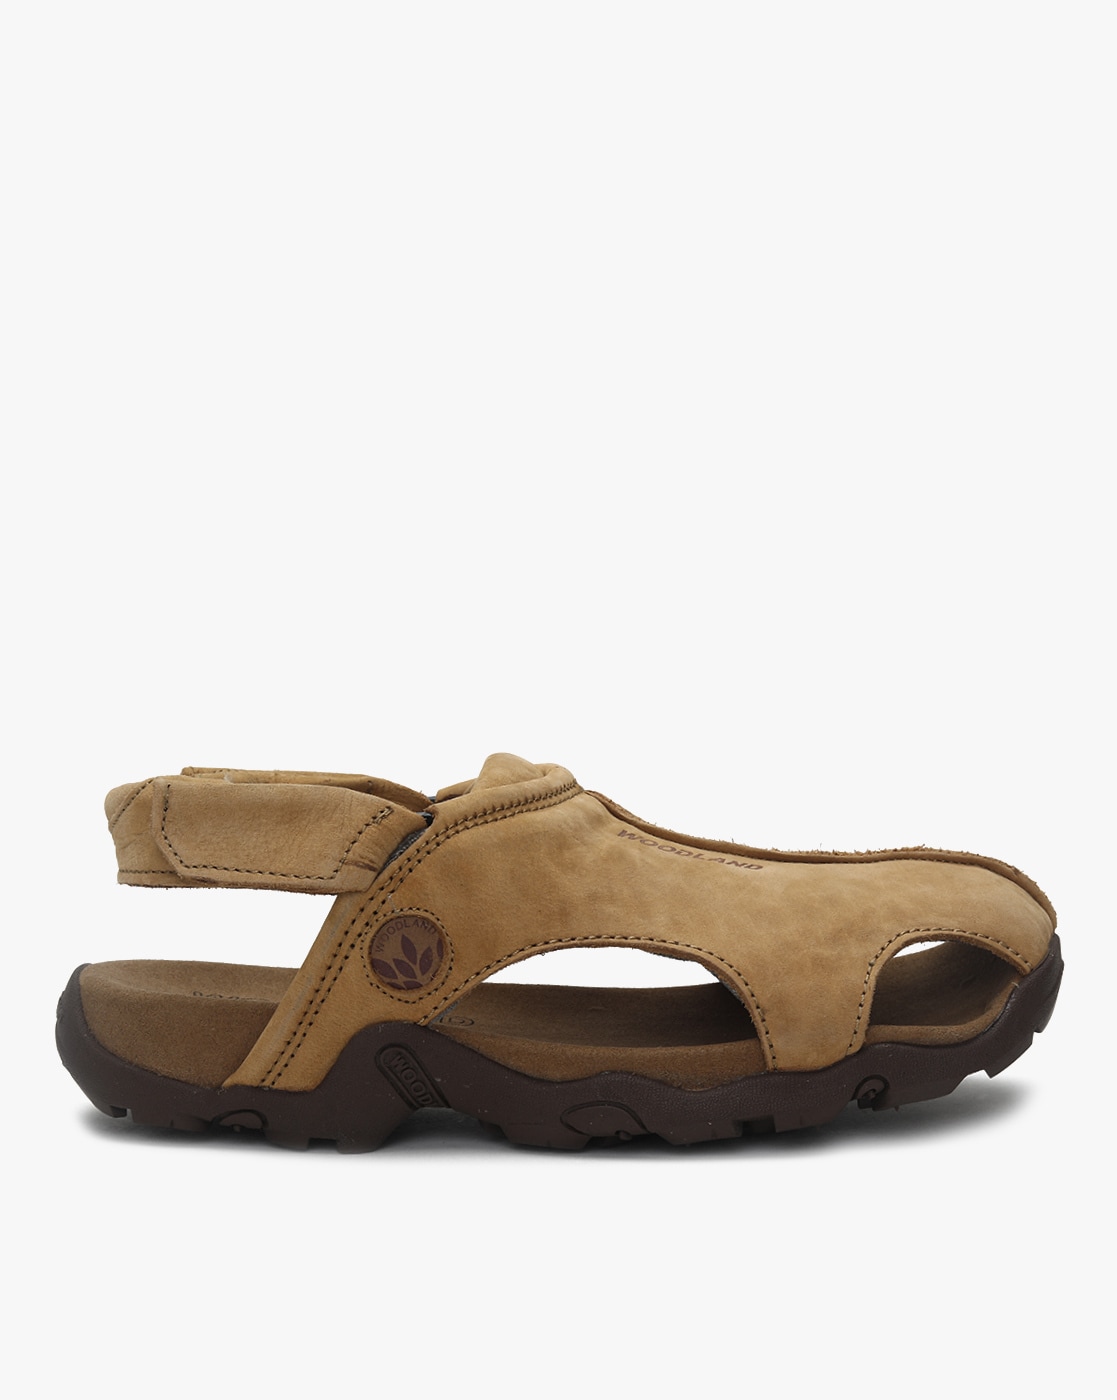 Shop online from a wide range of Men sandals online at Woodland.